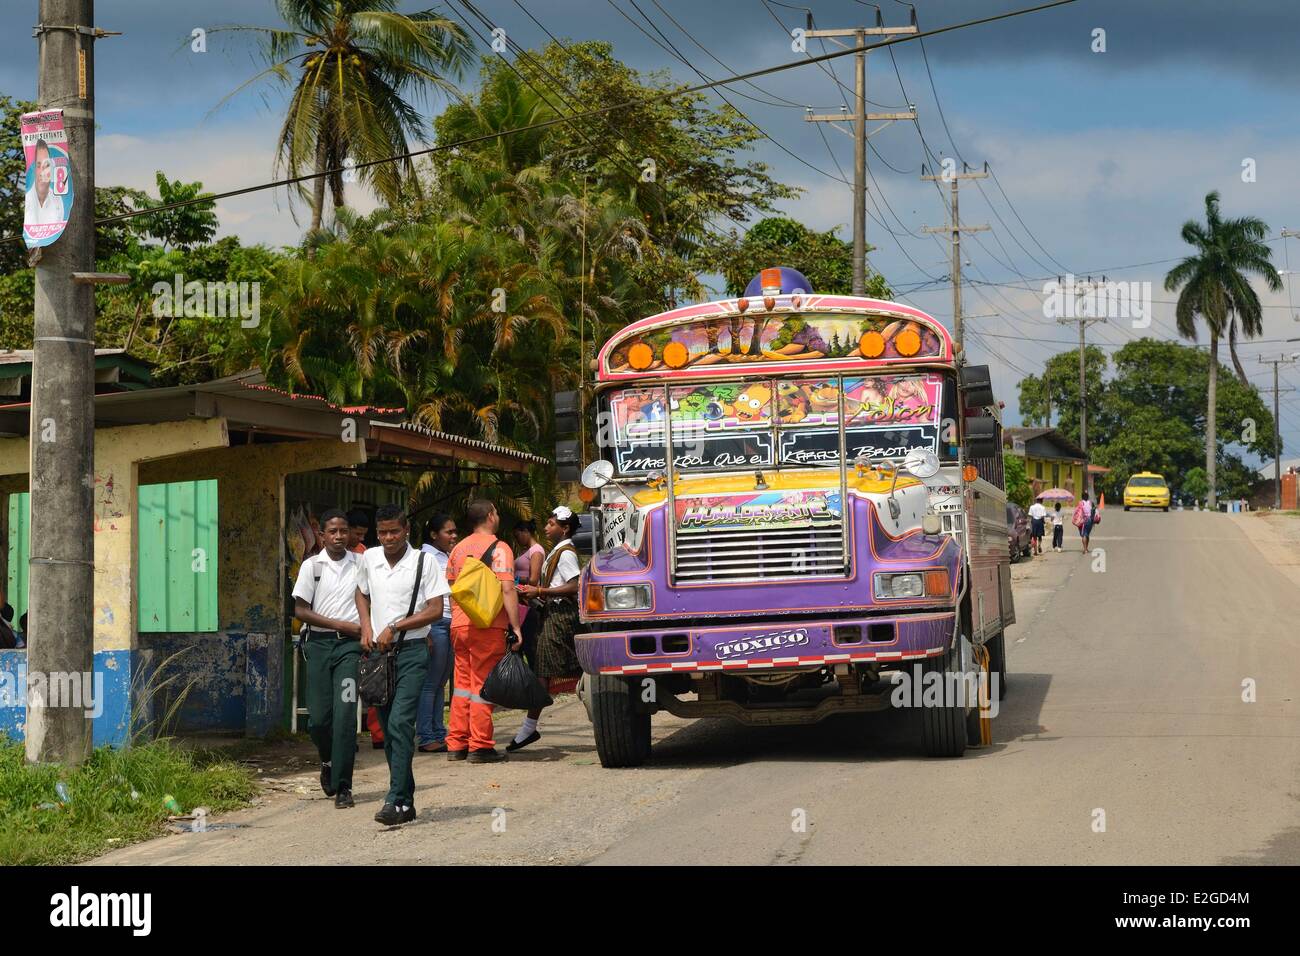 La province de Colon Panama bus appelé Diablo Rojo (diable rouge) couverts de peintures criardes Banque D'Images